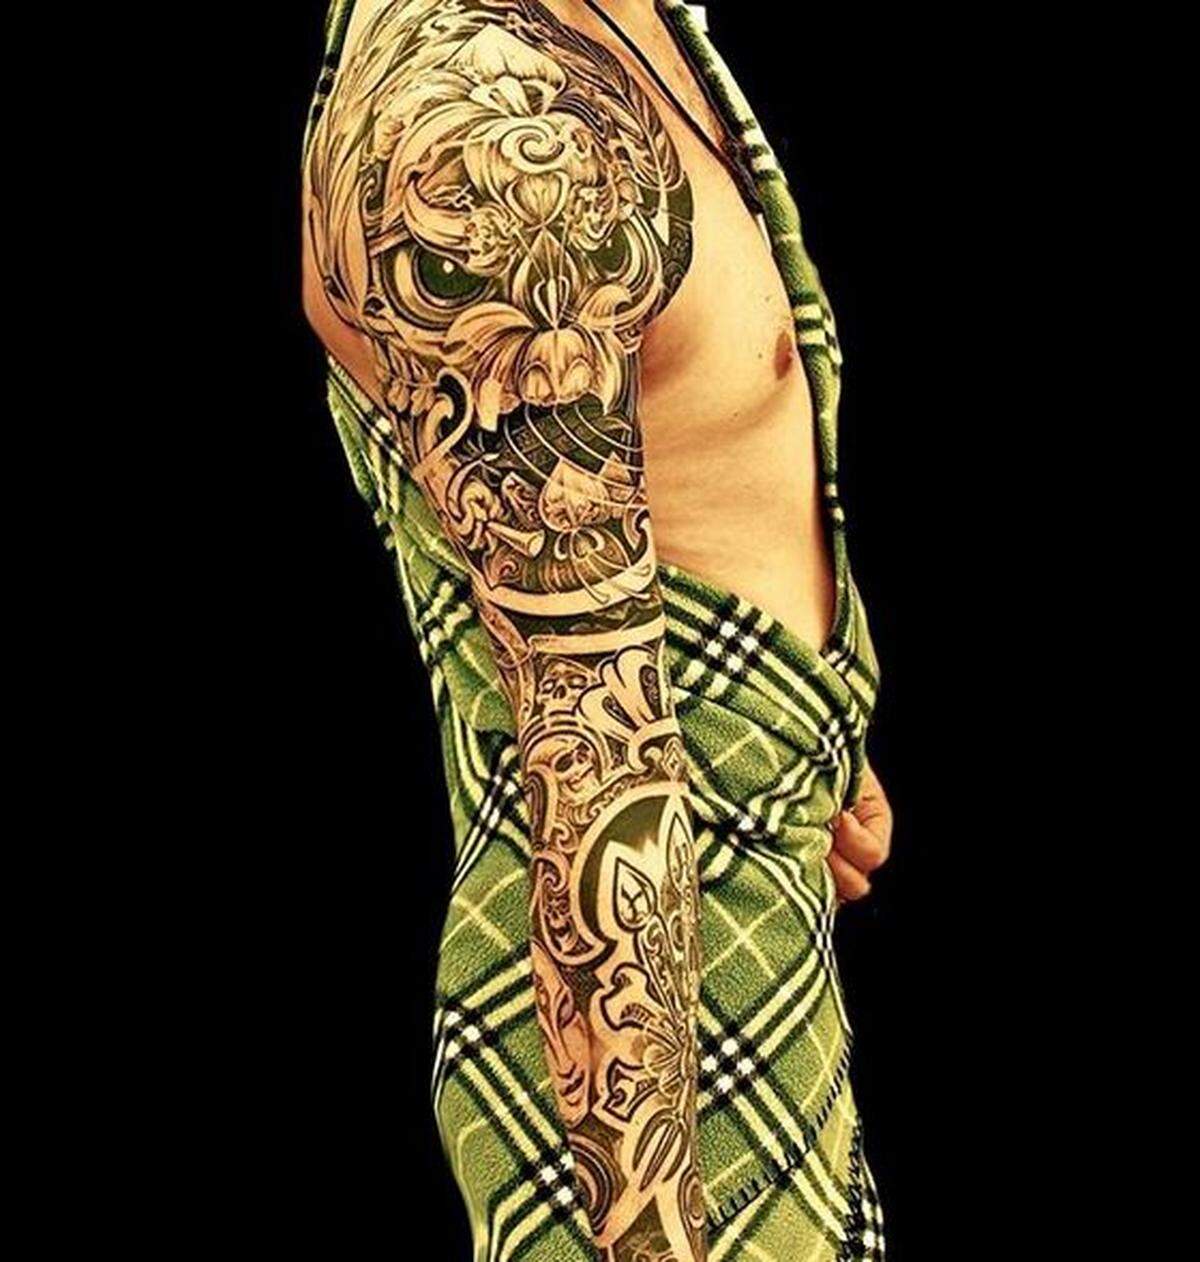 Der Wiener Tätowierer Claus Fuhrmann gilt als Legende unter den österreichischen Tattoo-Künstlern. Er hat einen eigenen Stil entwickelt, der sich durch ganz bestimmte Elemente auszeichnet: aufwendige, asiatische Muster, Totenköpfe, Drachen in allen Facetten und Priatenmotive.